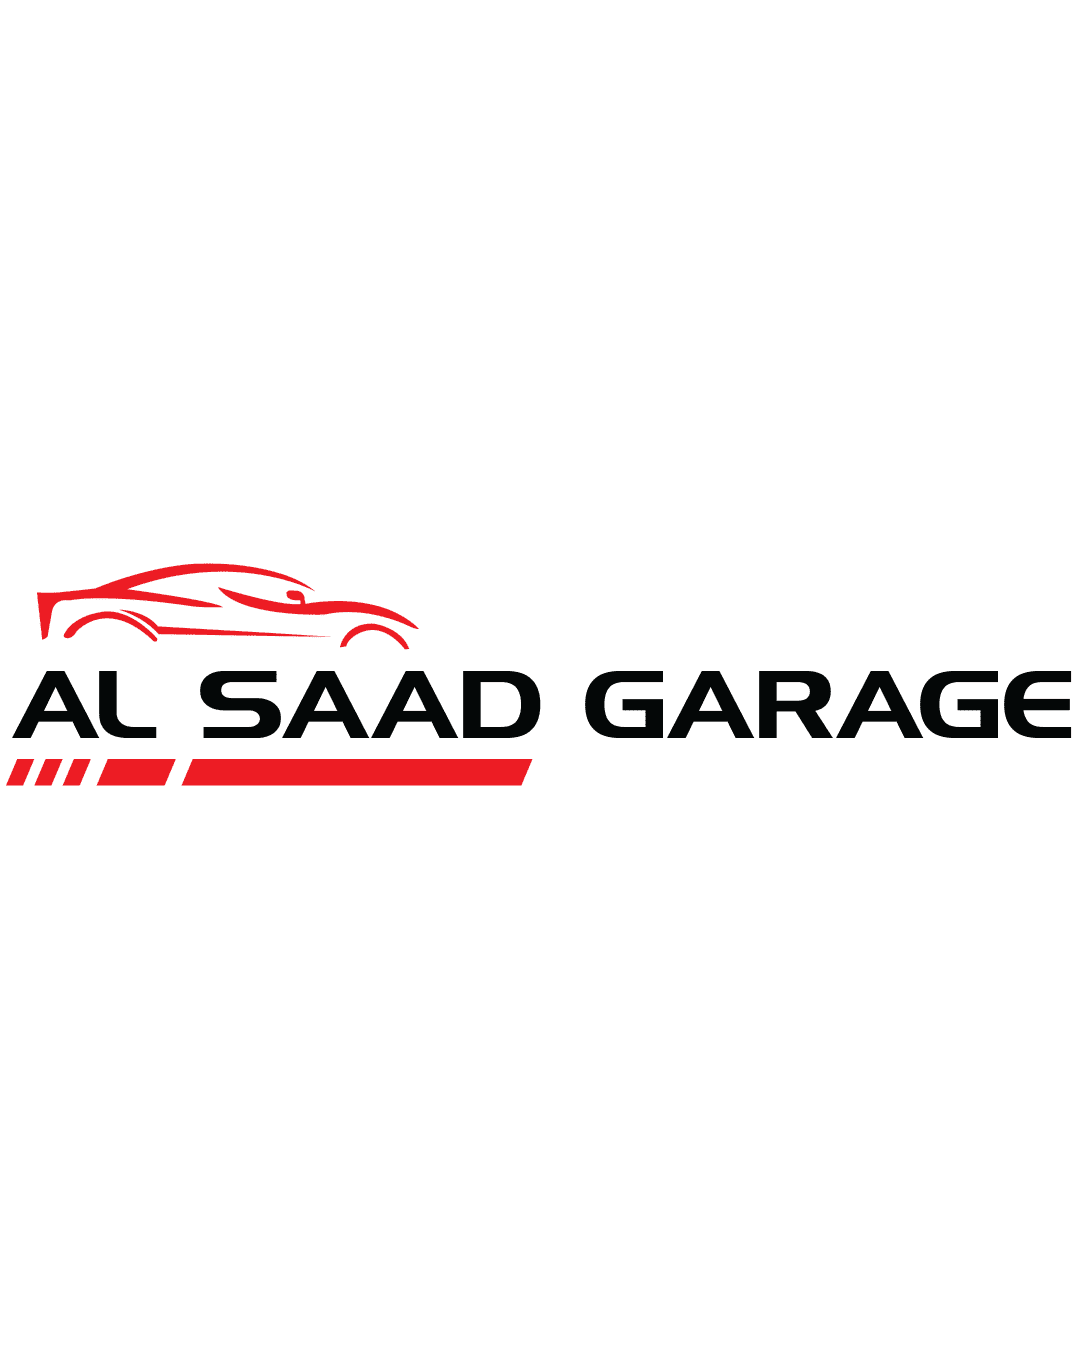 Al Saad Garage